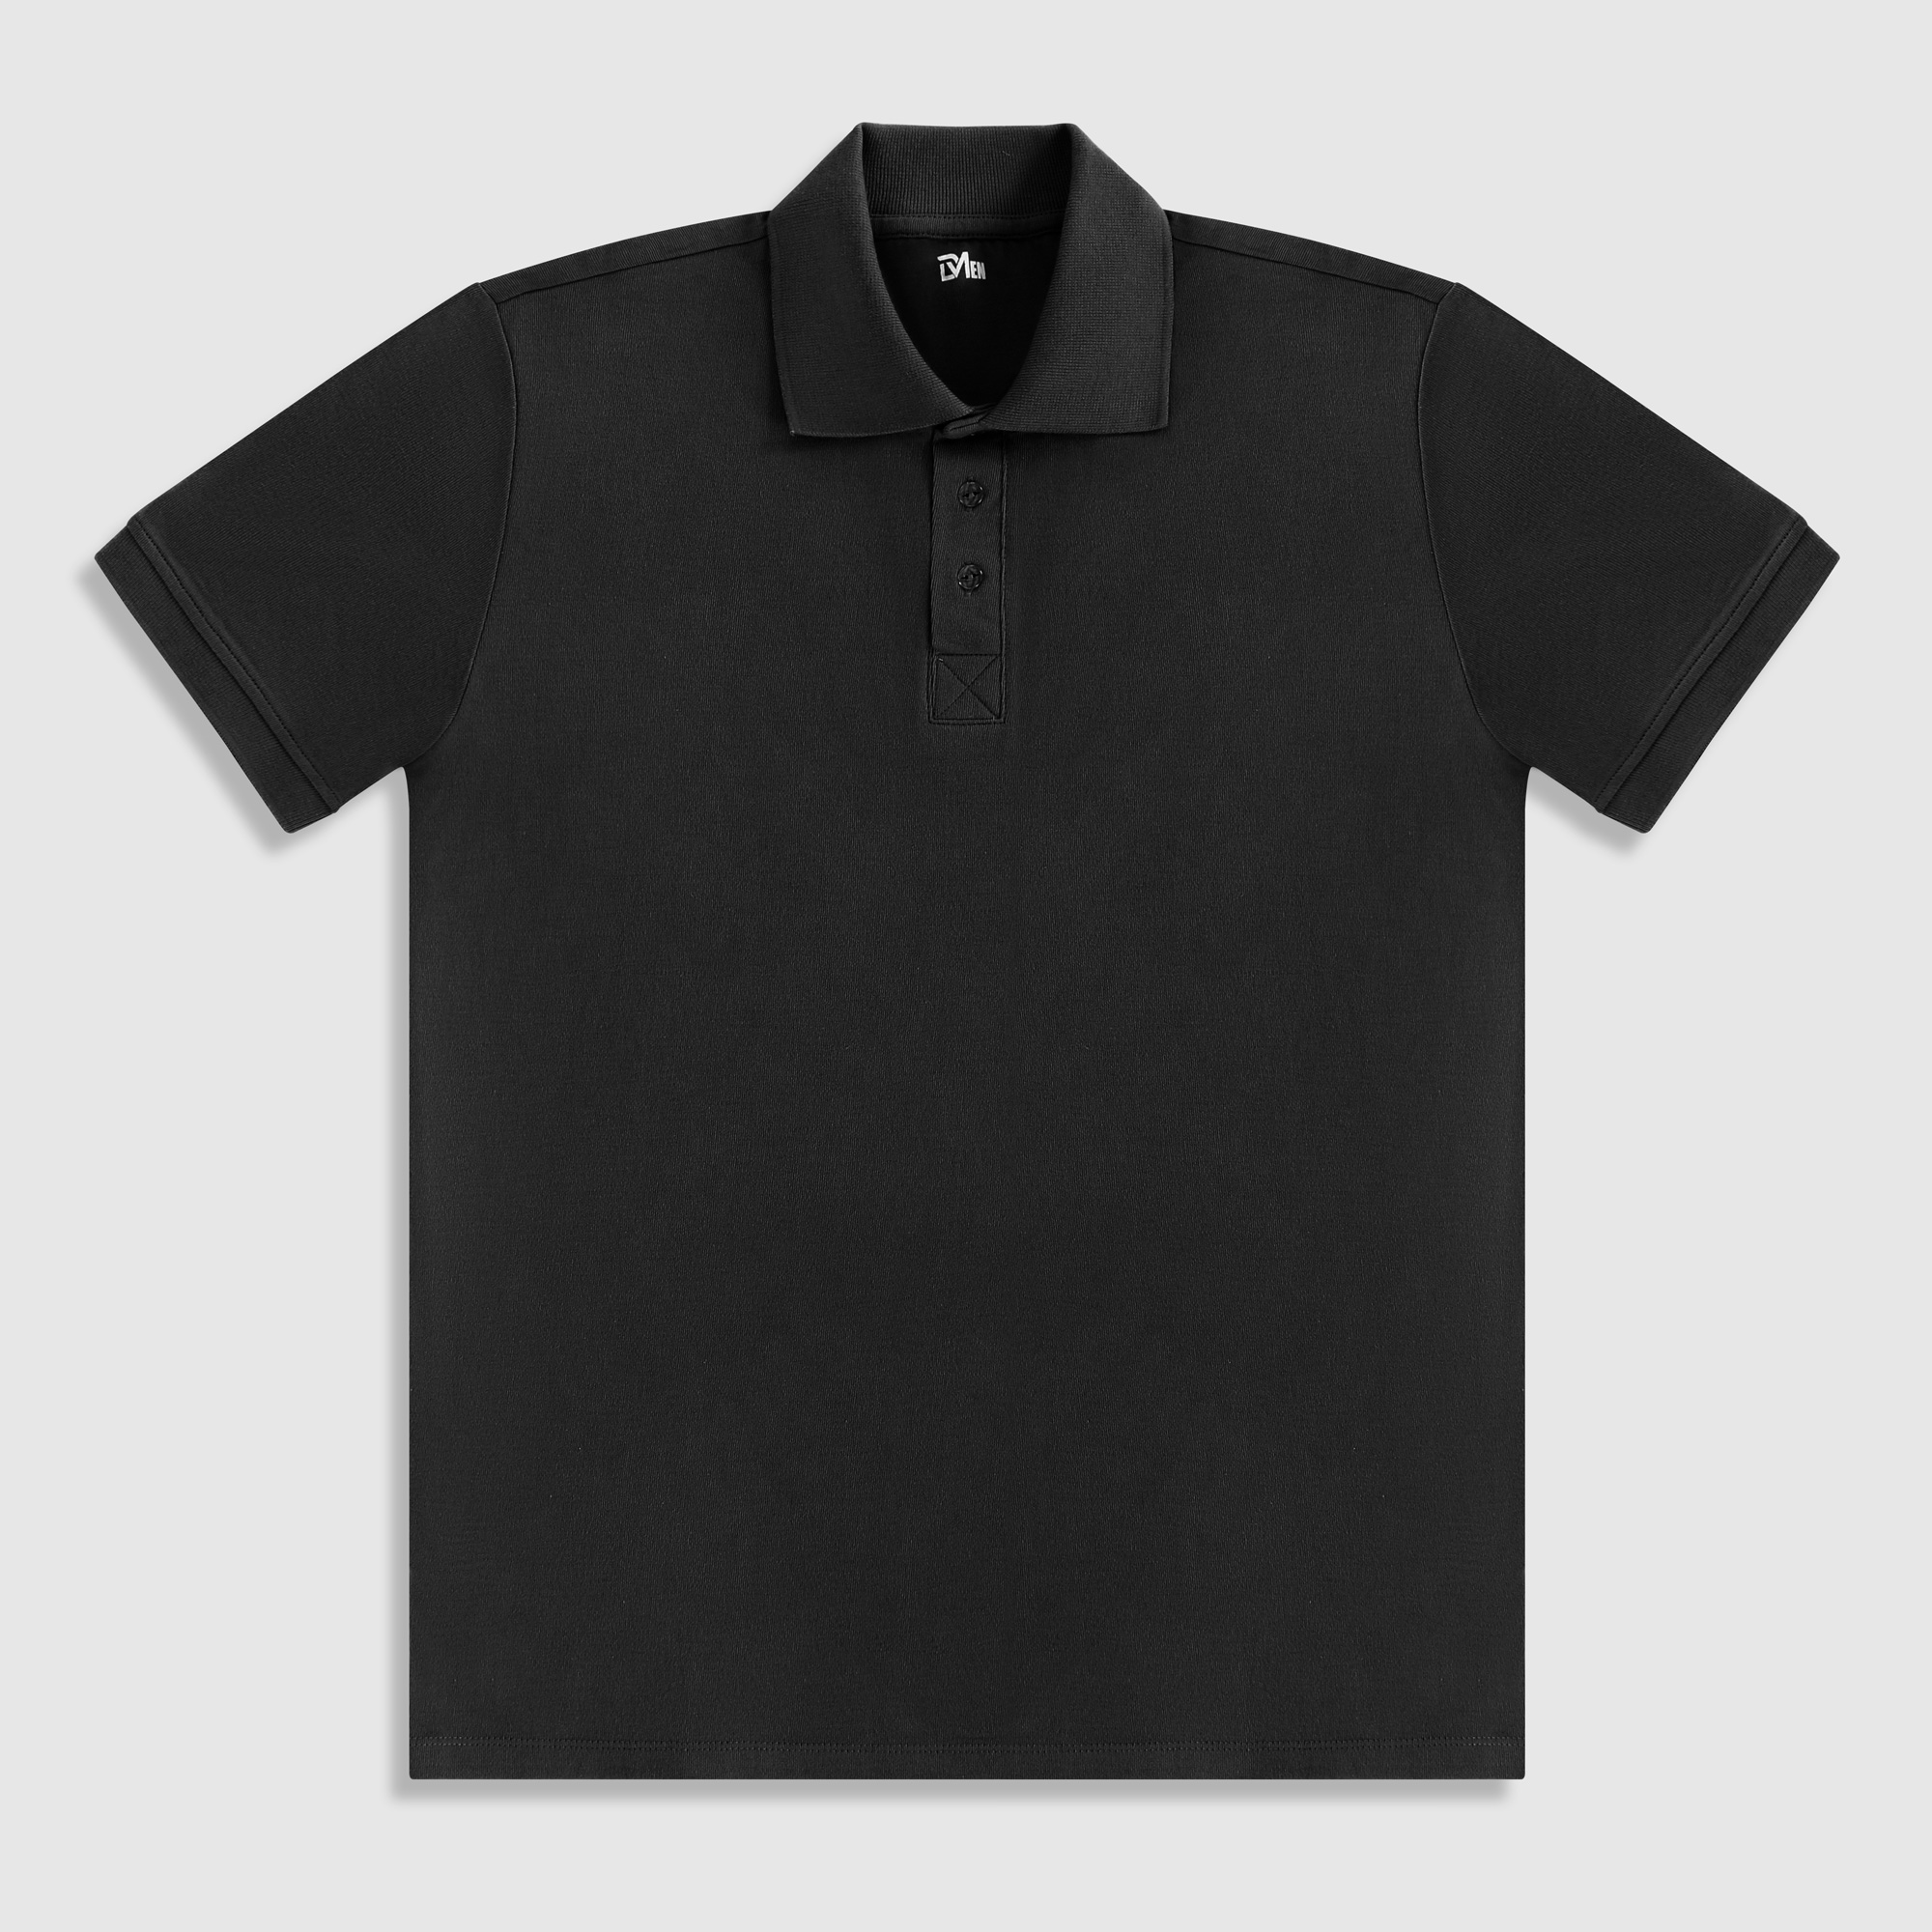 Рубашка мужская Diva Teks поло черная, цвет черный, размер XL